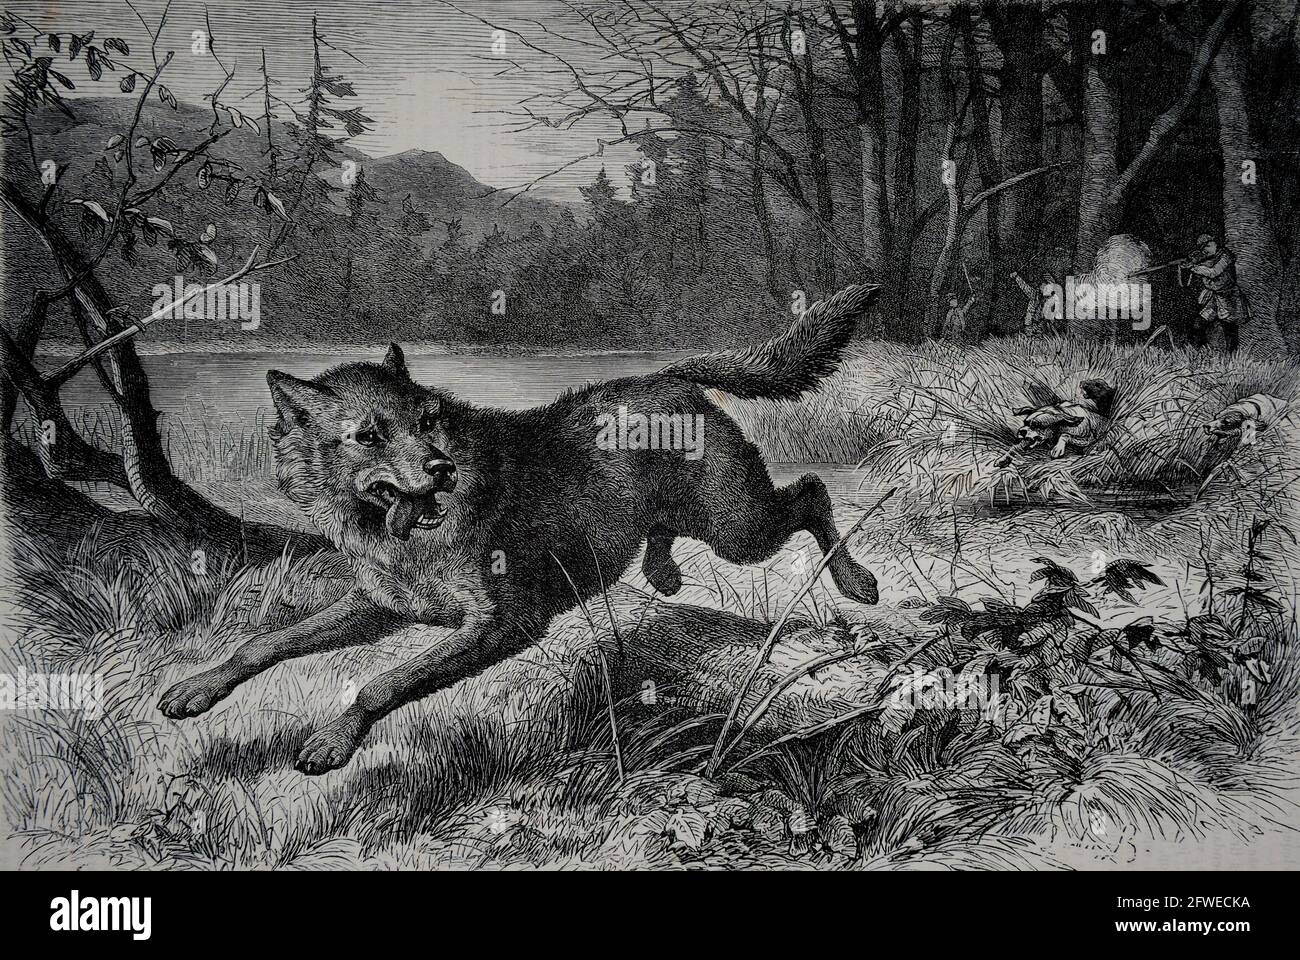 En Finlande, dans la région de Turku, une paire de loups étaient considérés comme responsables d'une série d'attaques d'enfants dans les années 1880. Les loups étaient responsables de la dea Banque D'Images